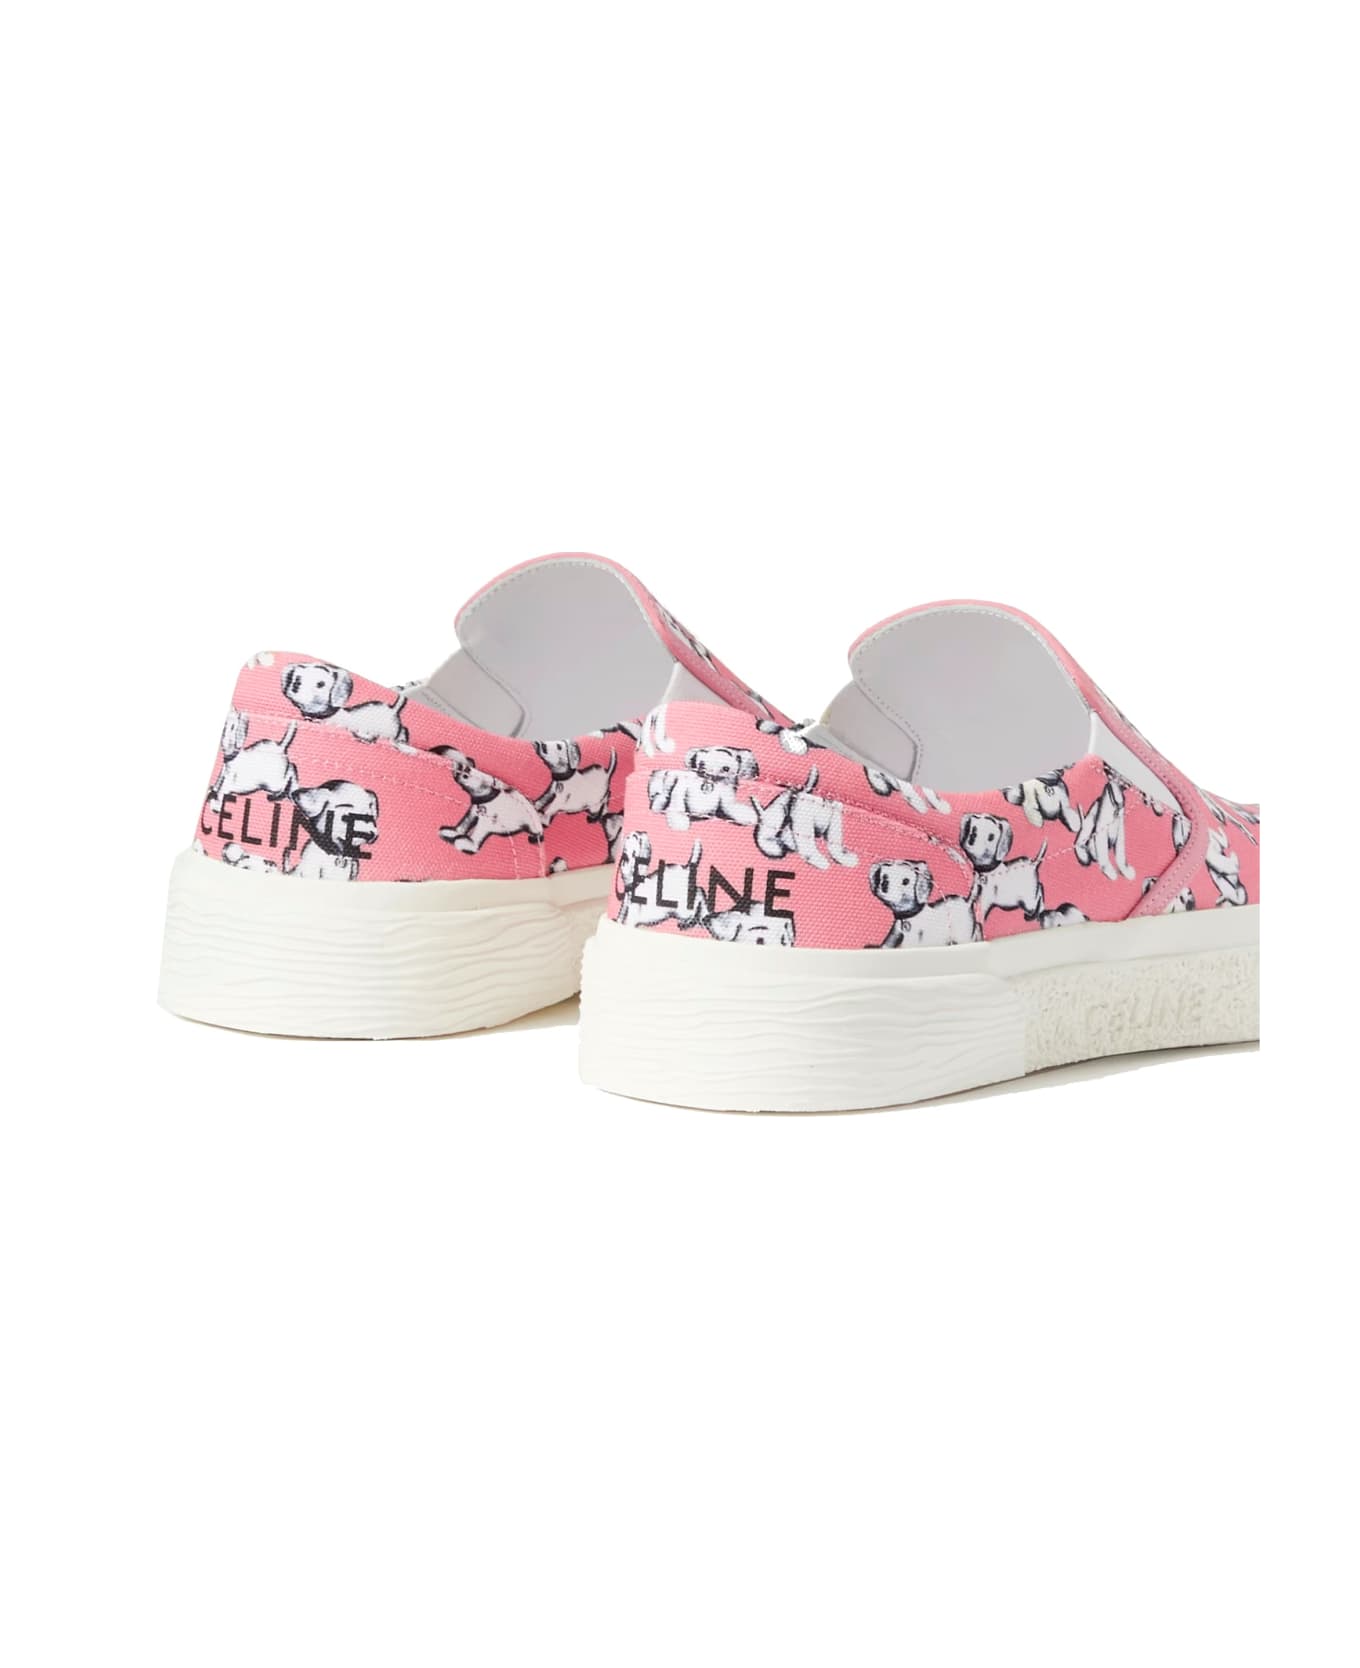 Celine Slip-on Sneakers - Pink